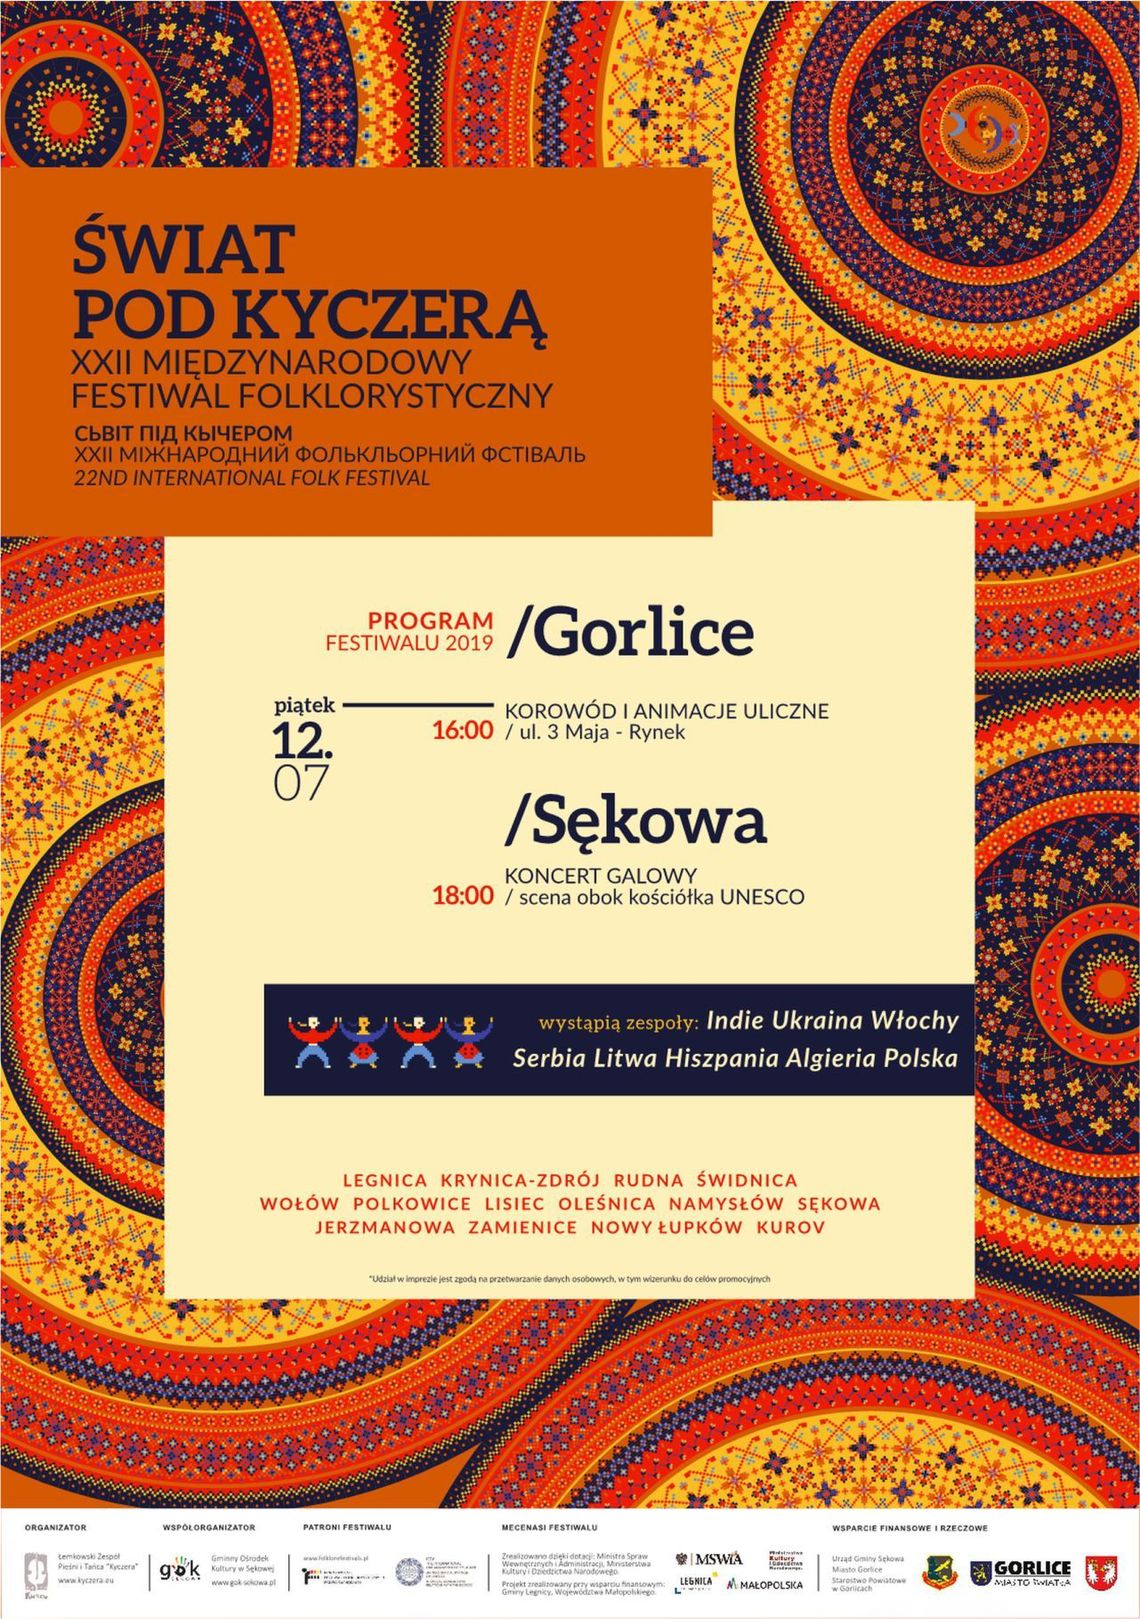 Świat pod Kyczerą - XXII Międzynarodowy Festiwal Folklorystyczny